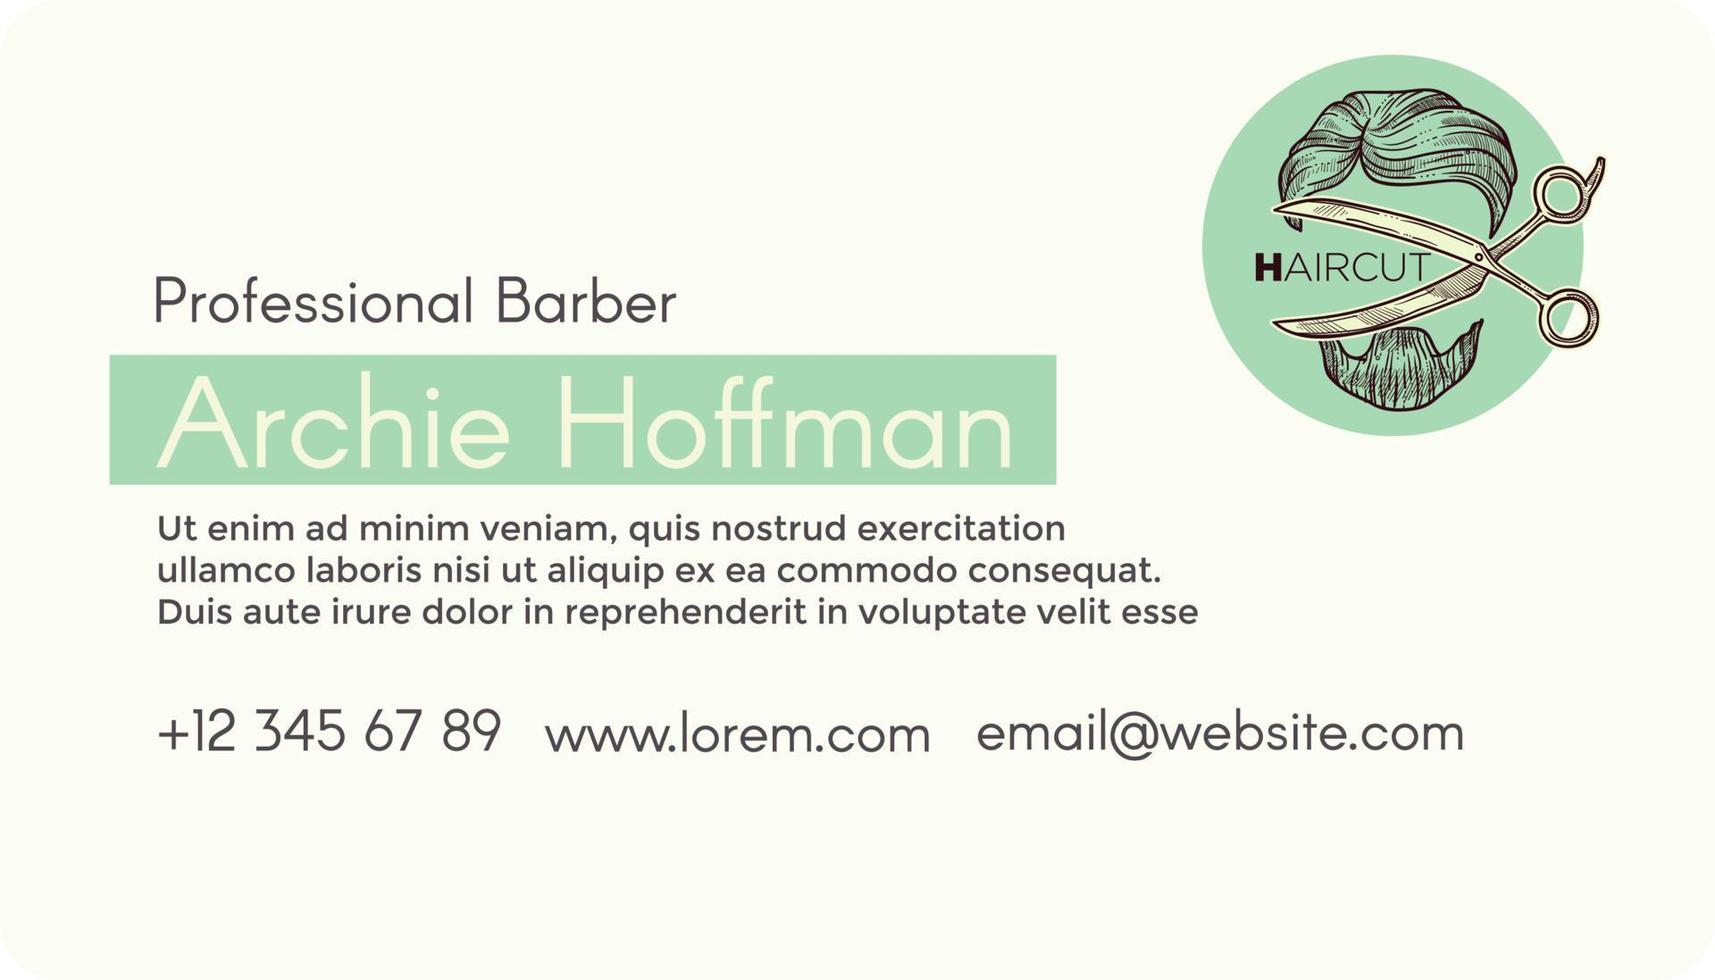 service de barbier professionnel, vecteur de carte de visite